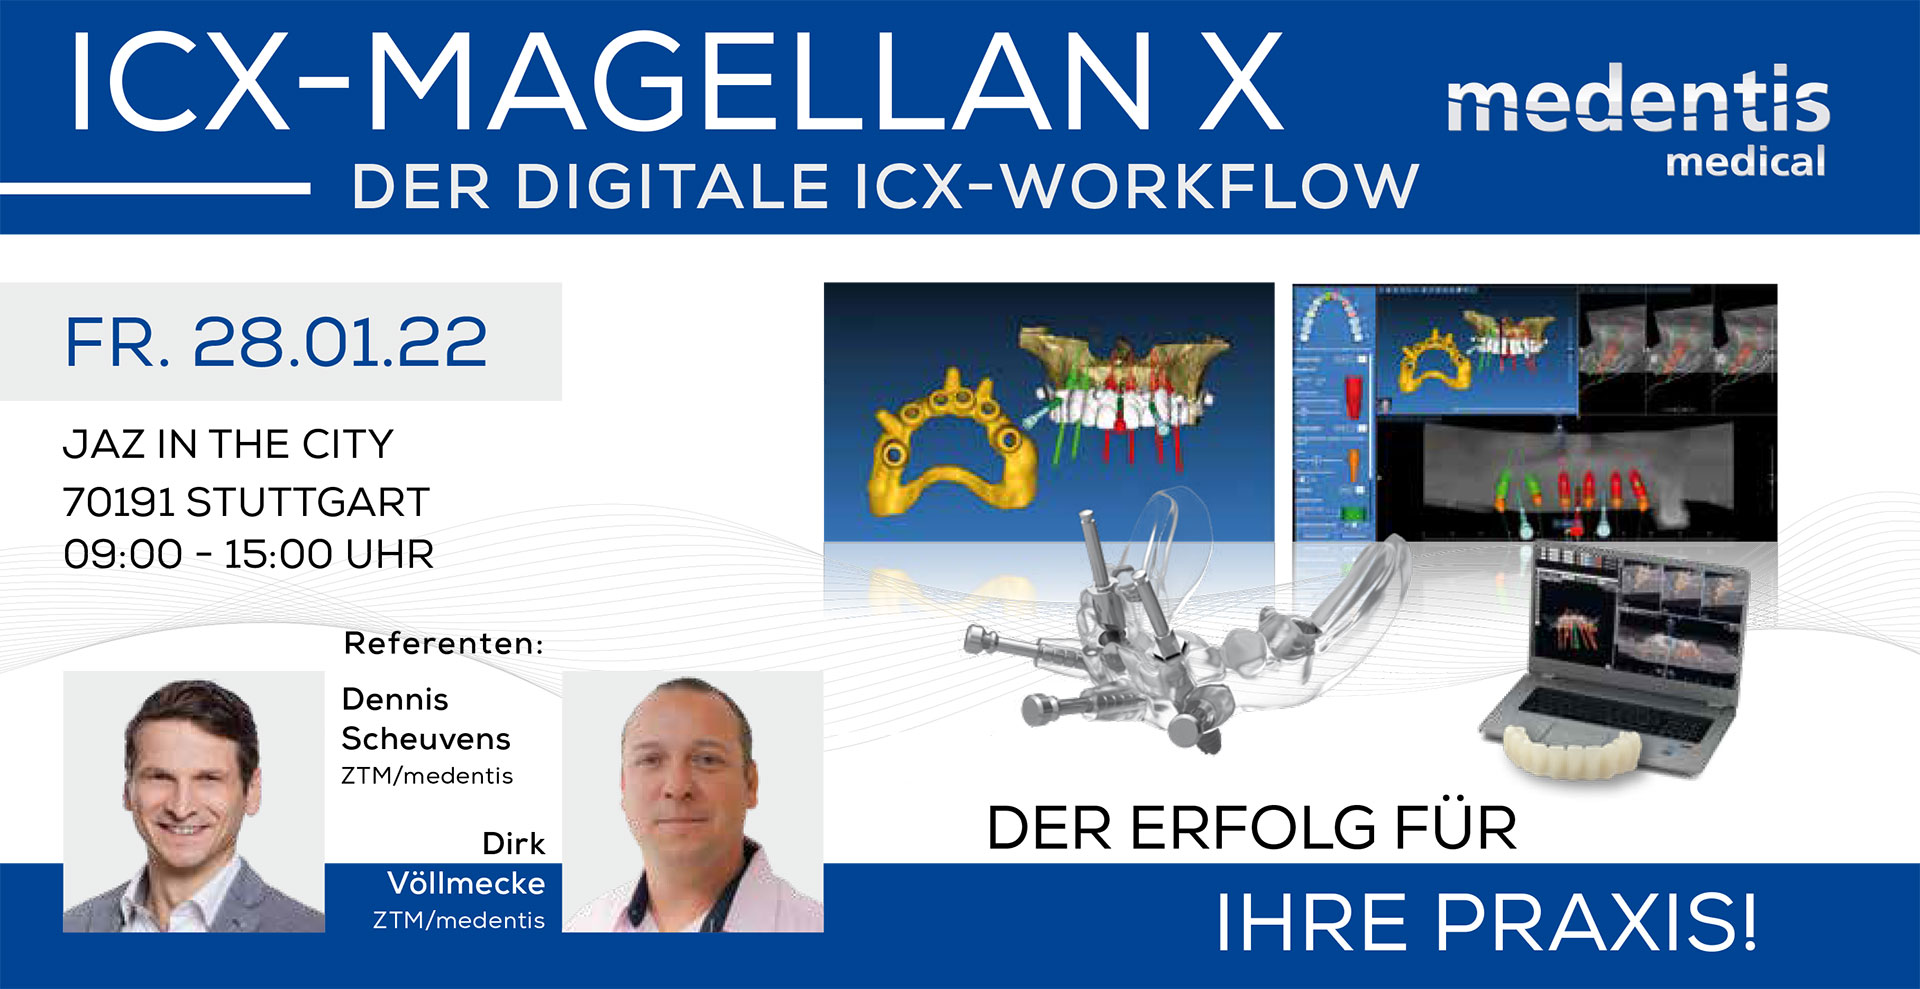 ICX-MAGELLAN X - der digitale ICS-Workflow